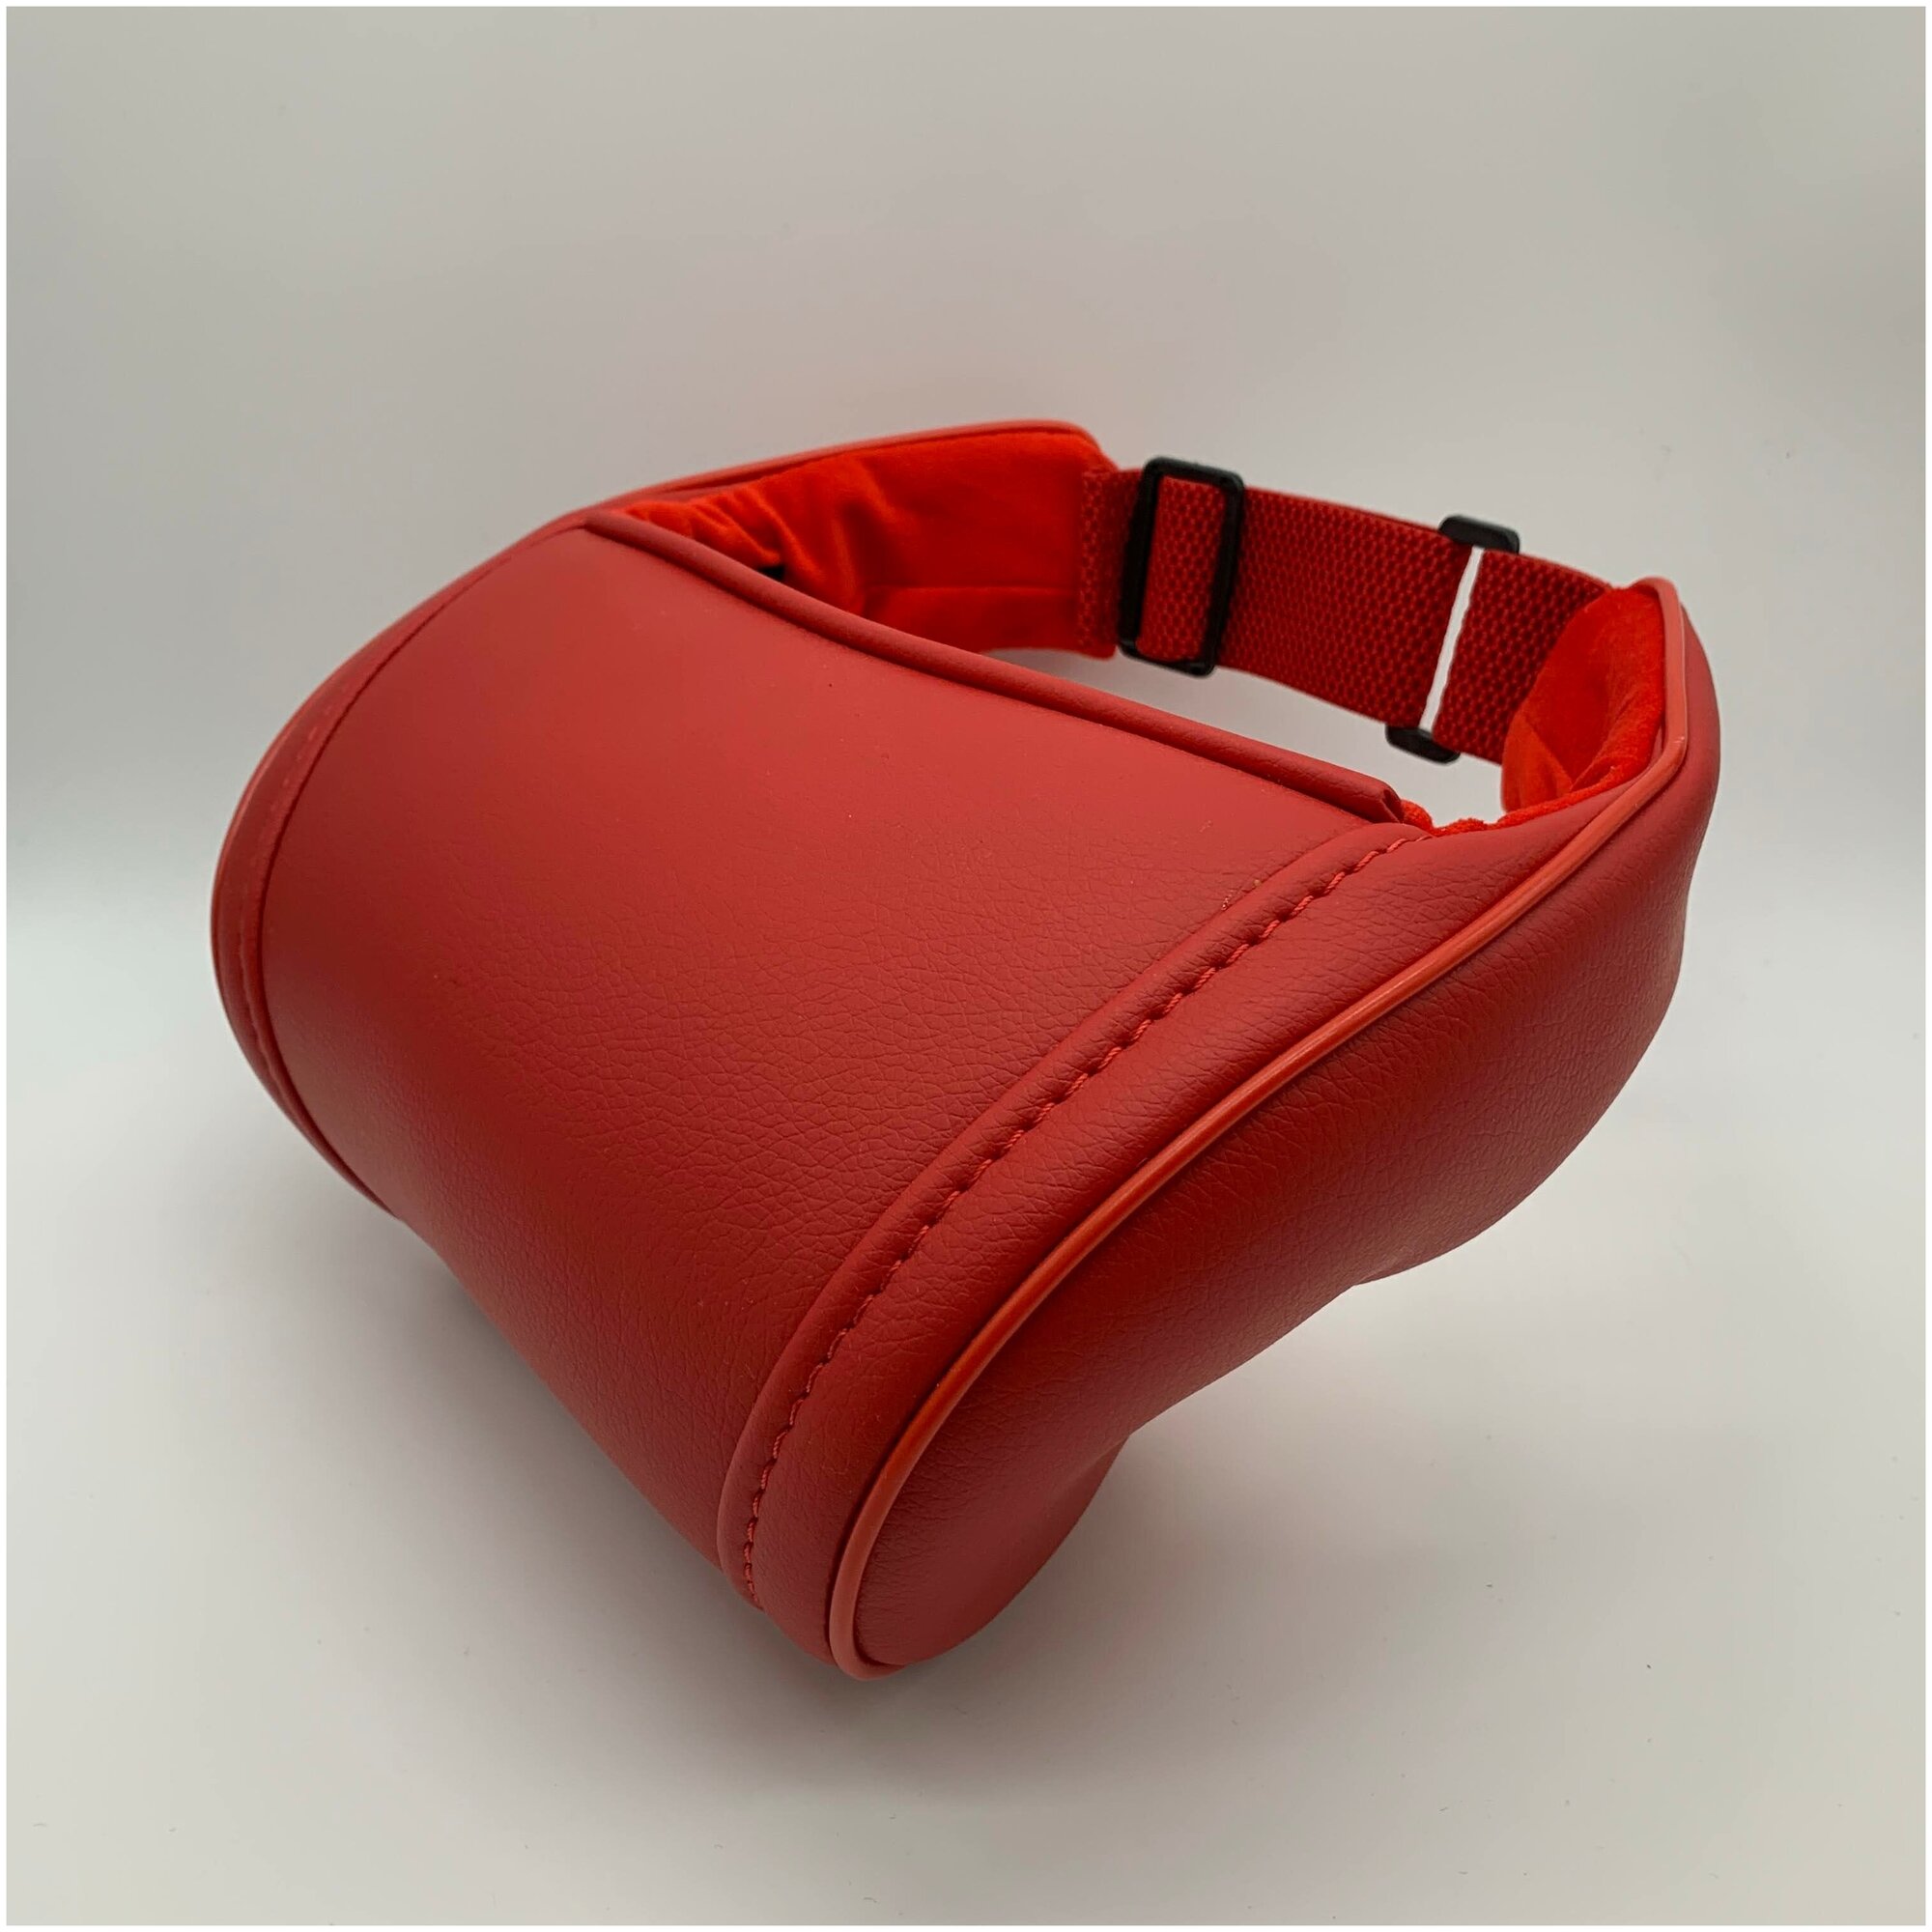 Красная автомобильная ортопедическая подушка для шеи на подголовник на сиденье. Экокожа премиум класса.